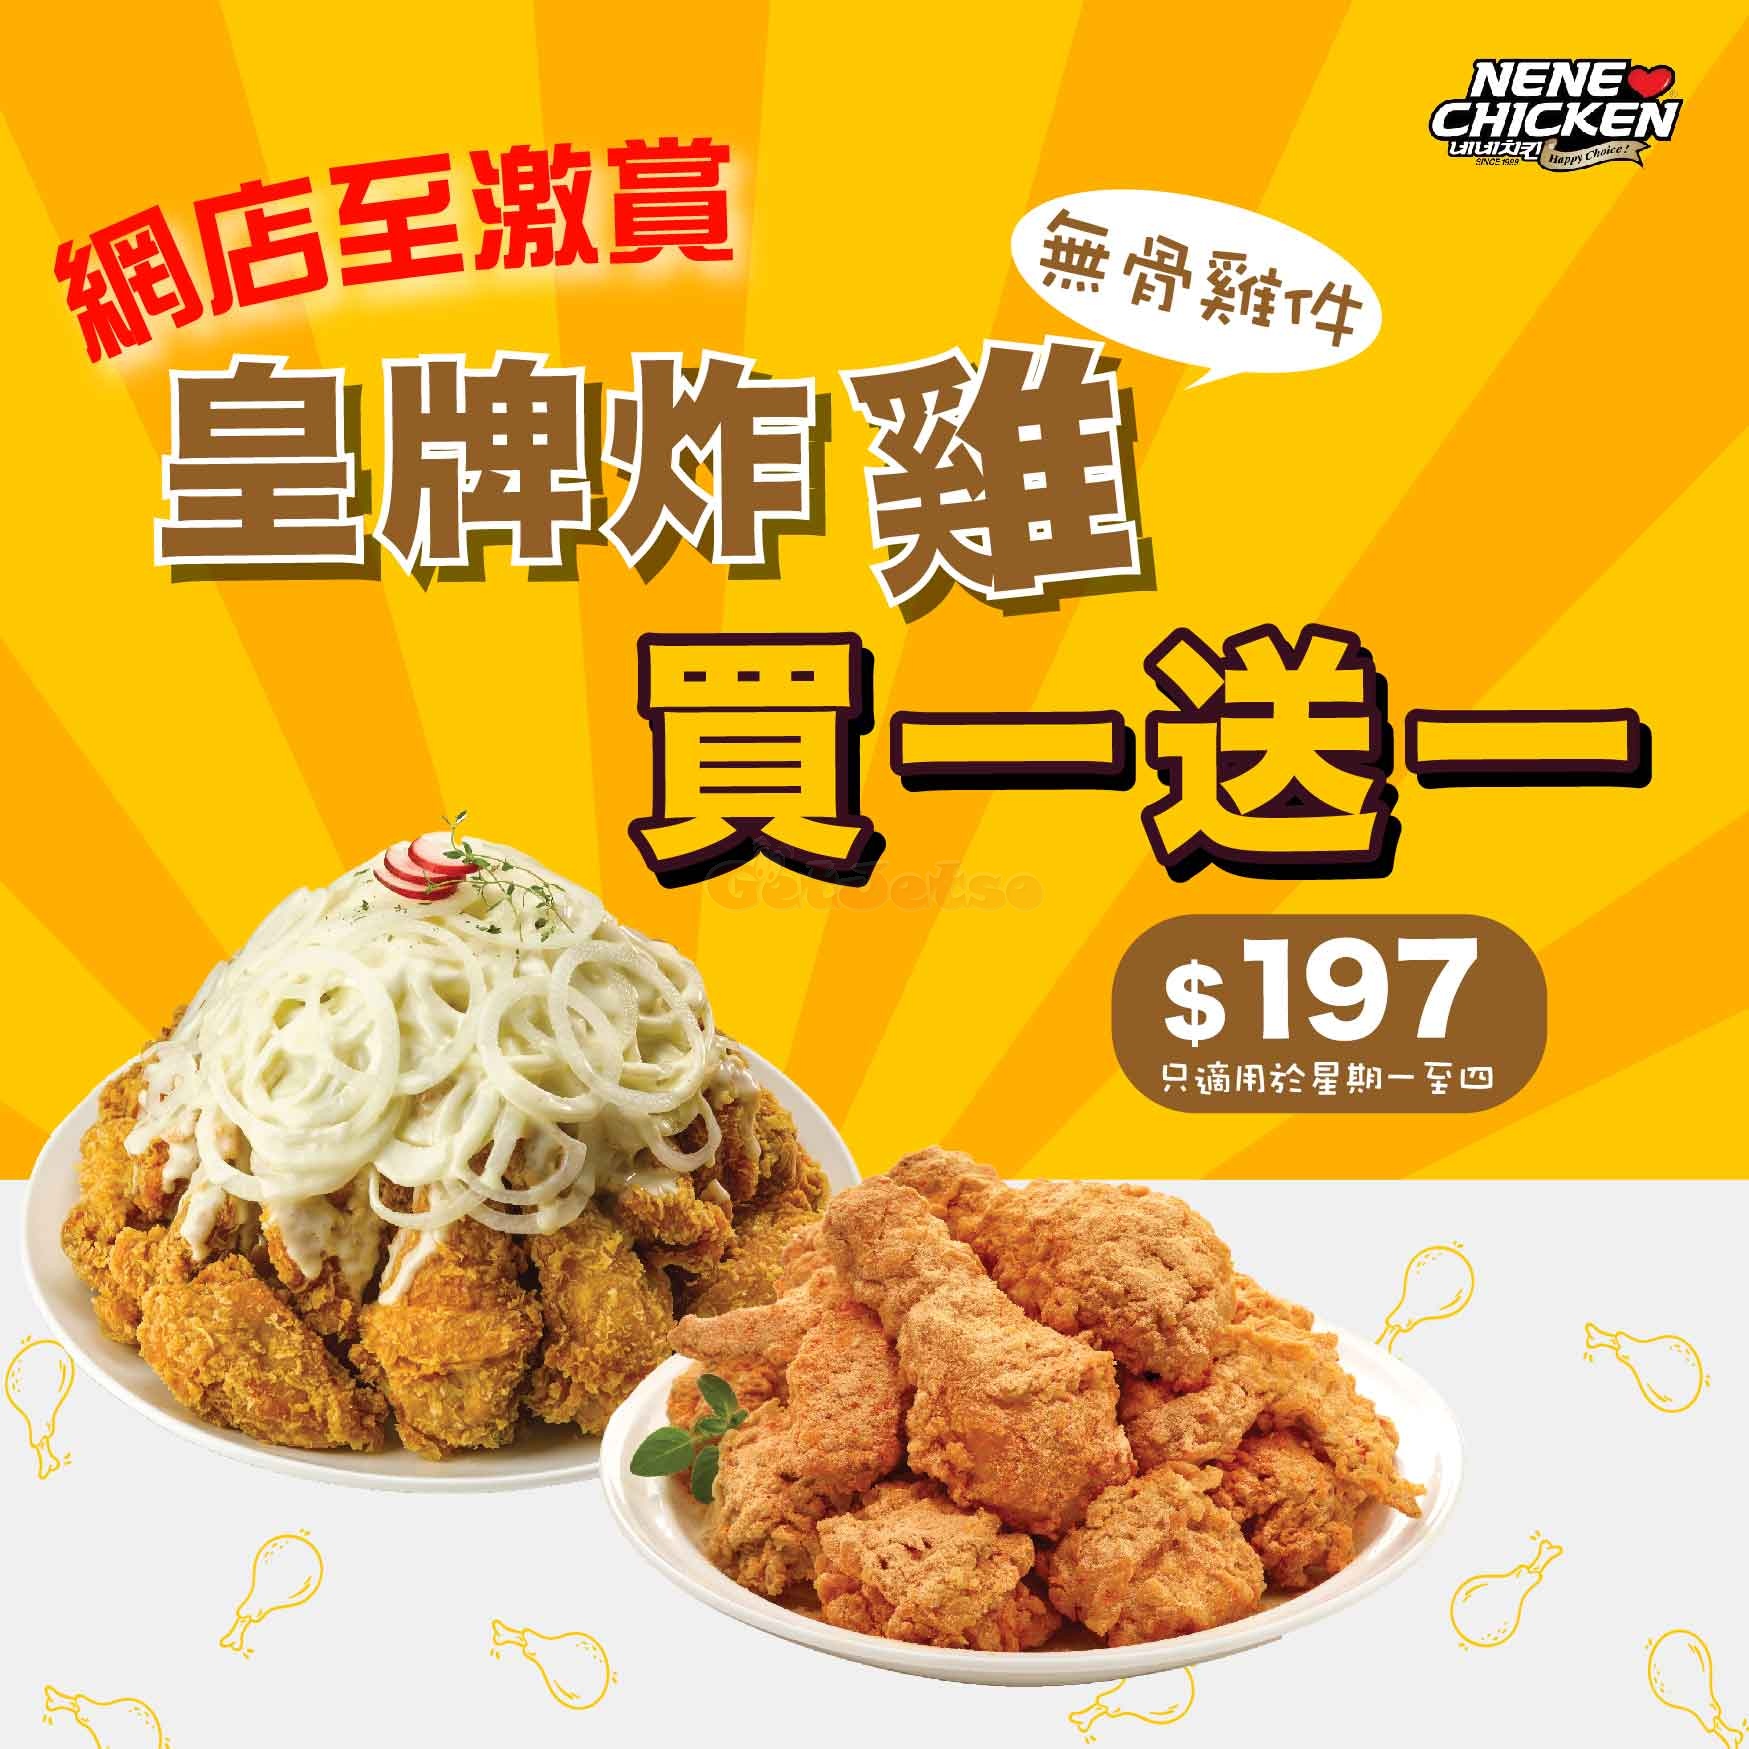 NeNe Chicken 韓式歡聚套餐8折優惠(12月15日更新)圖片1